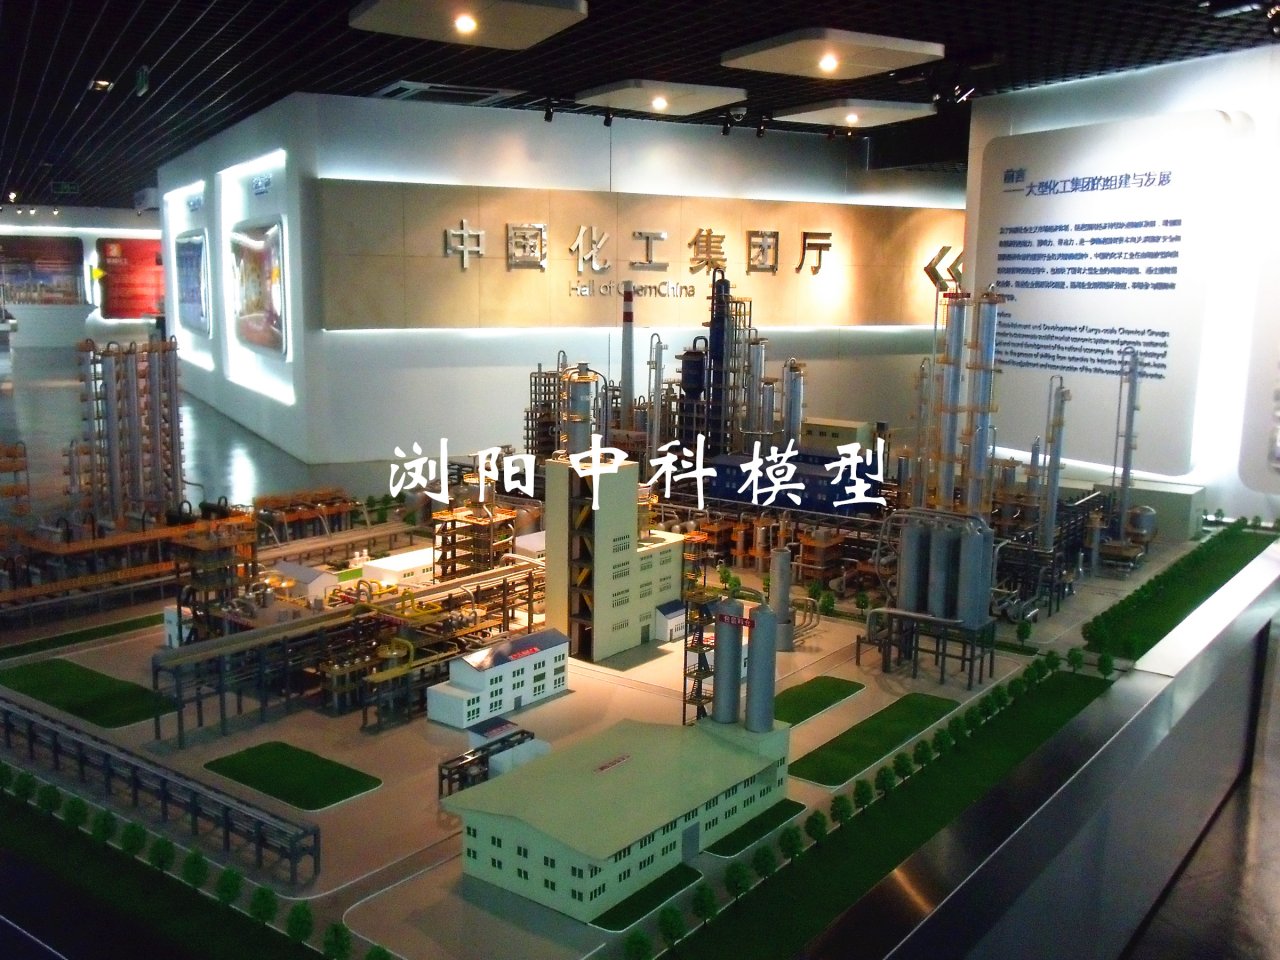 化工博物館裝置模型